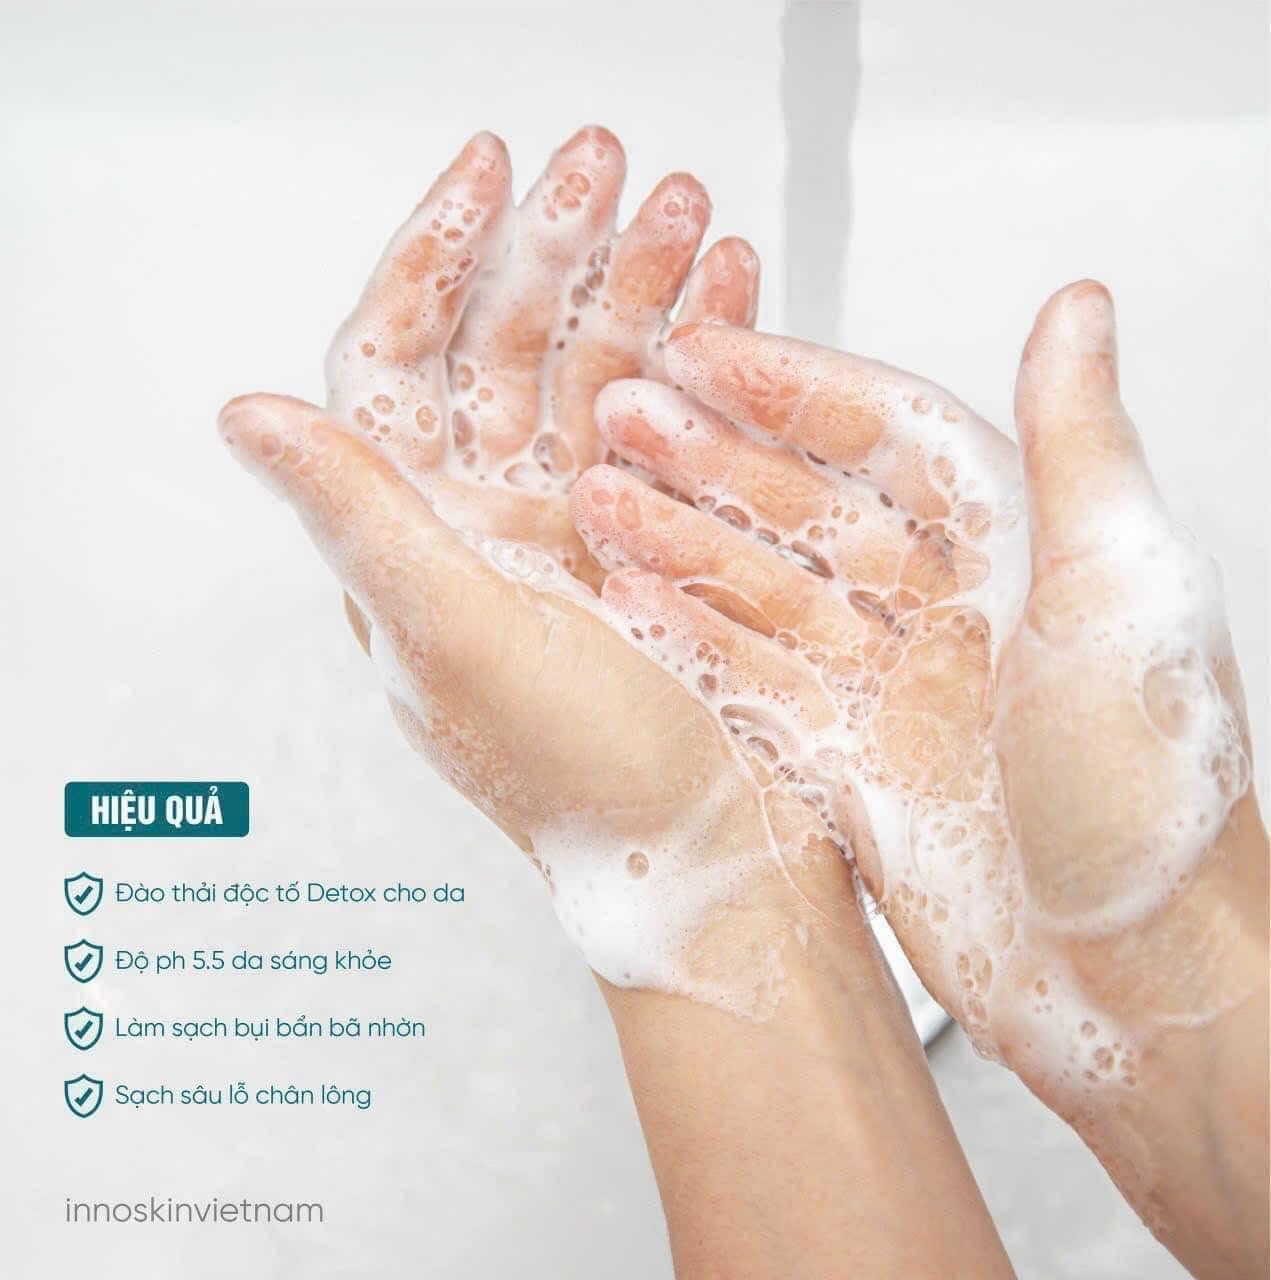 Sữa Rửa Mặt Daily Skin Natural Detox - Foam Cleansing mang lại 6 công dụng ưu việt